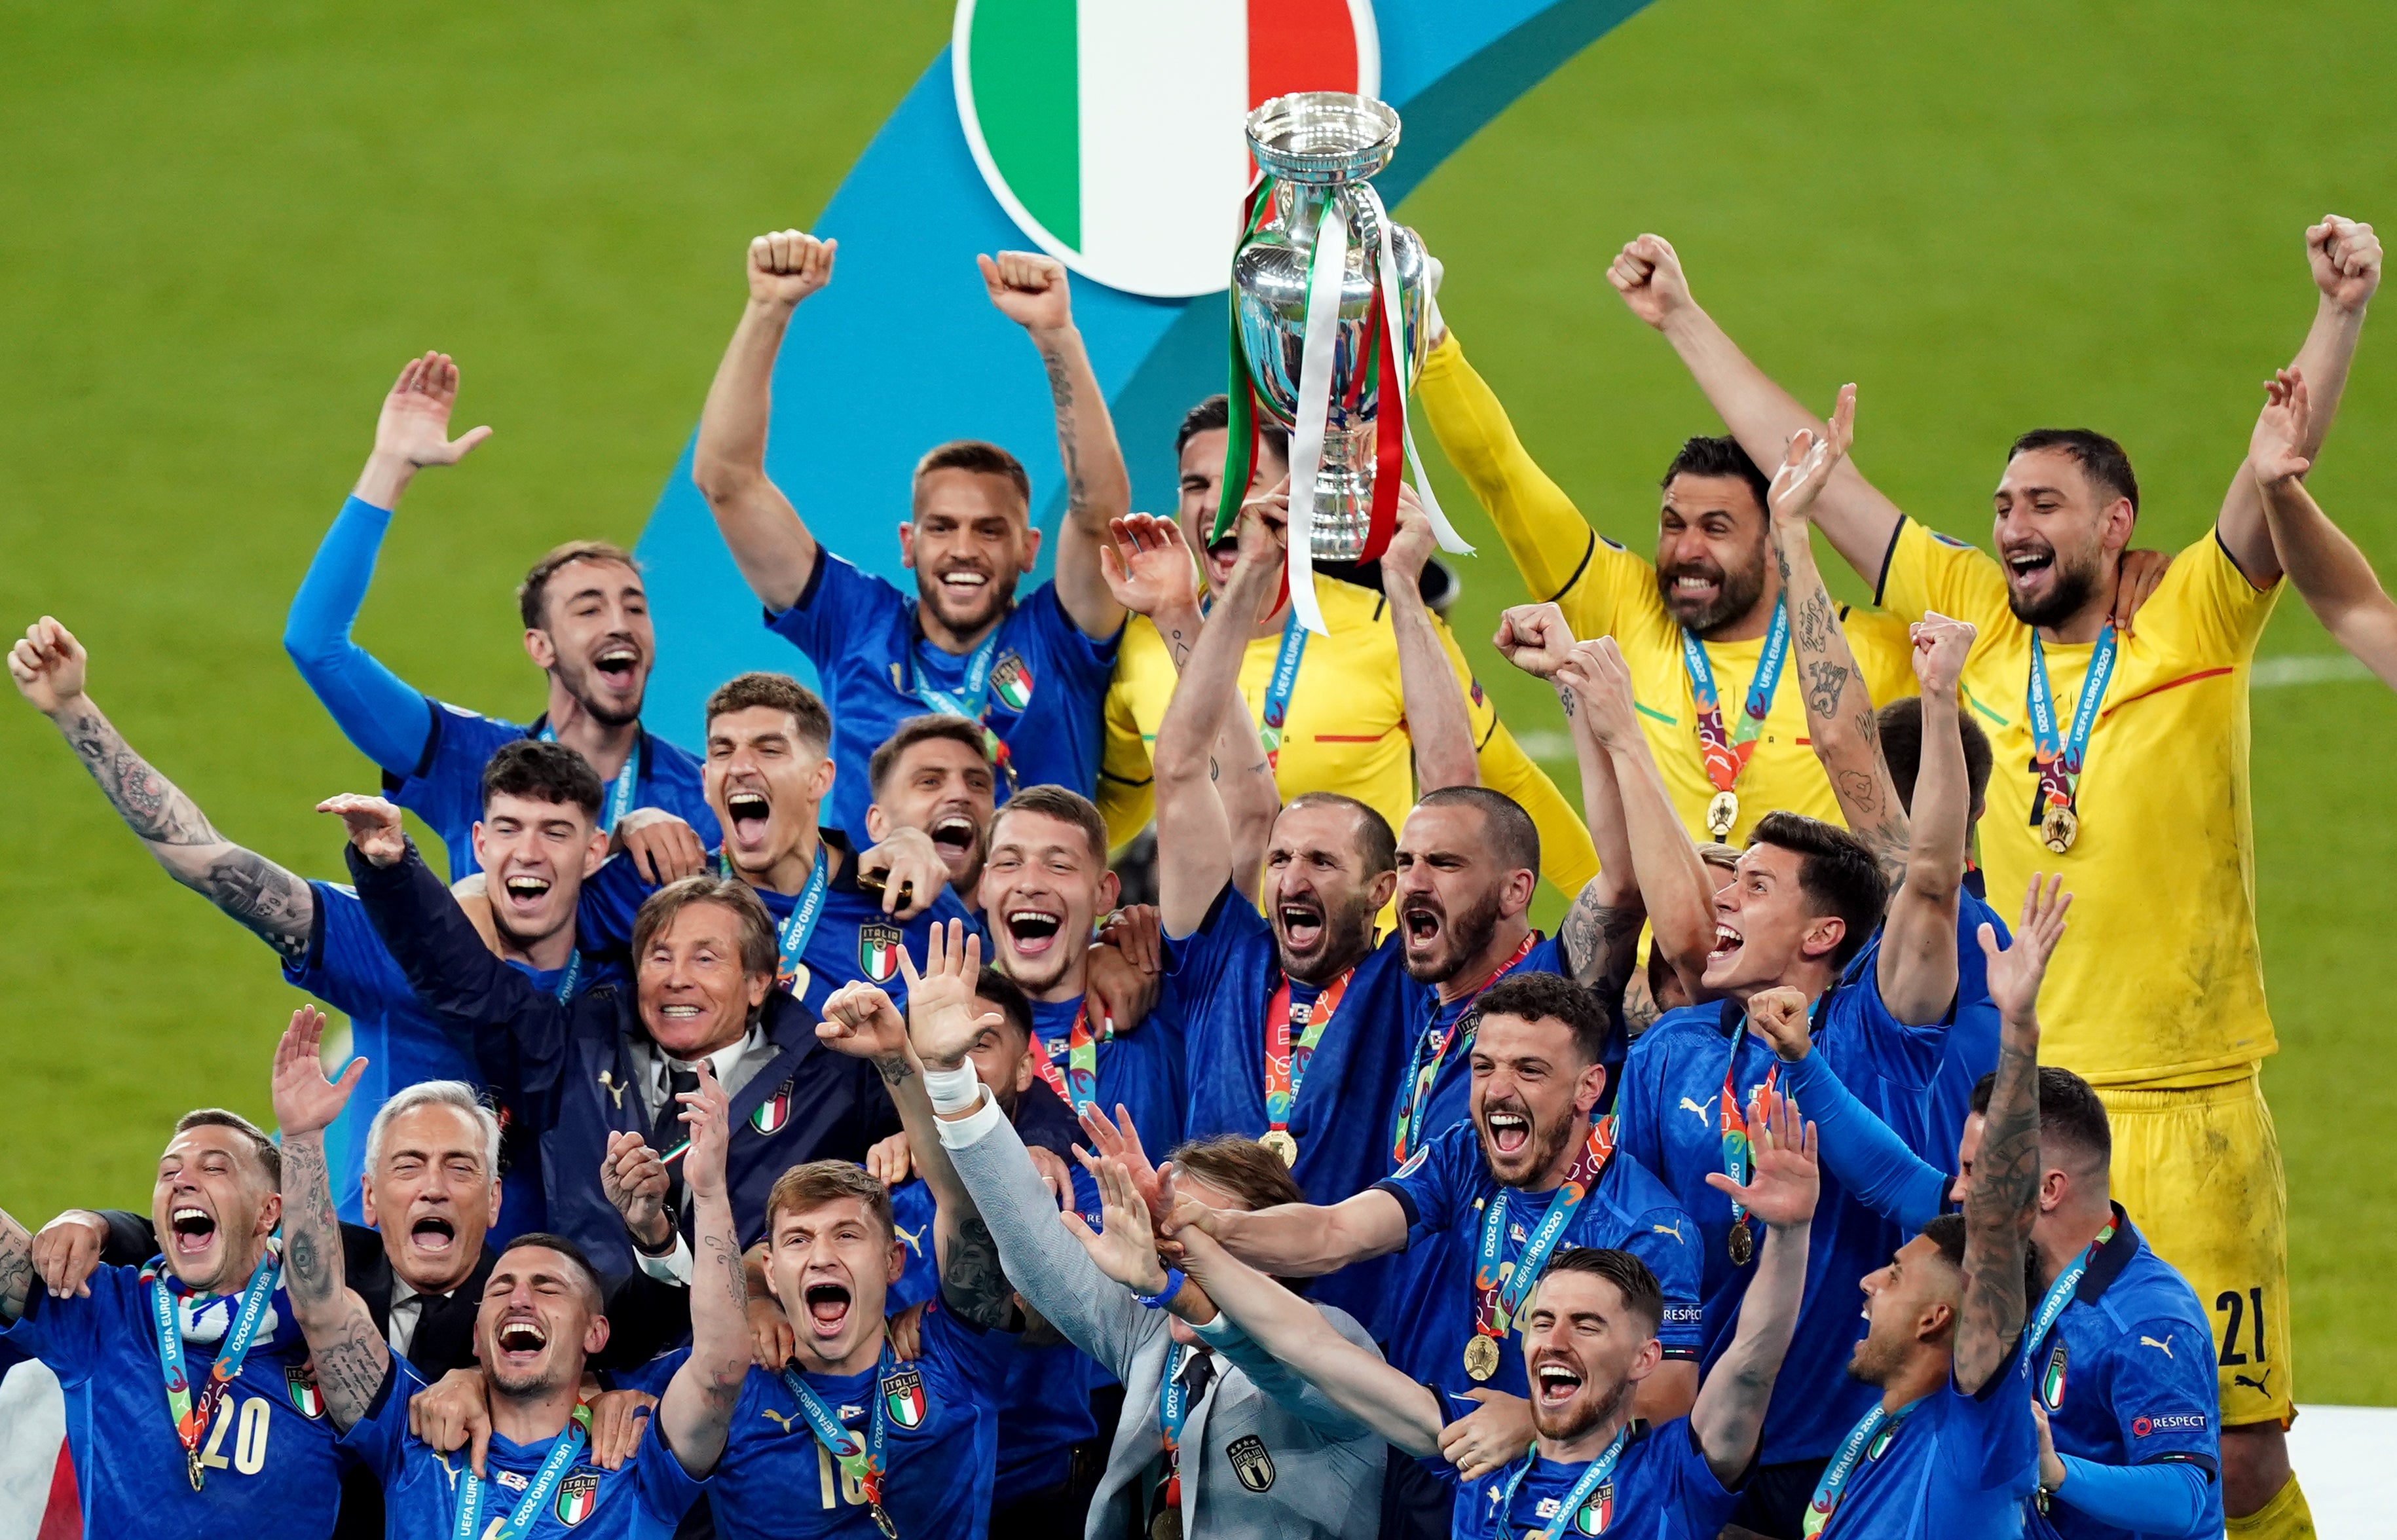 Italy won Euro 2020